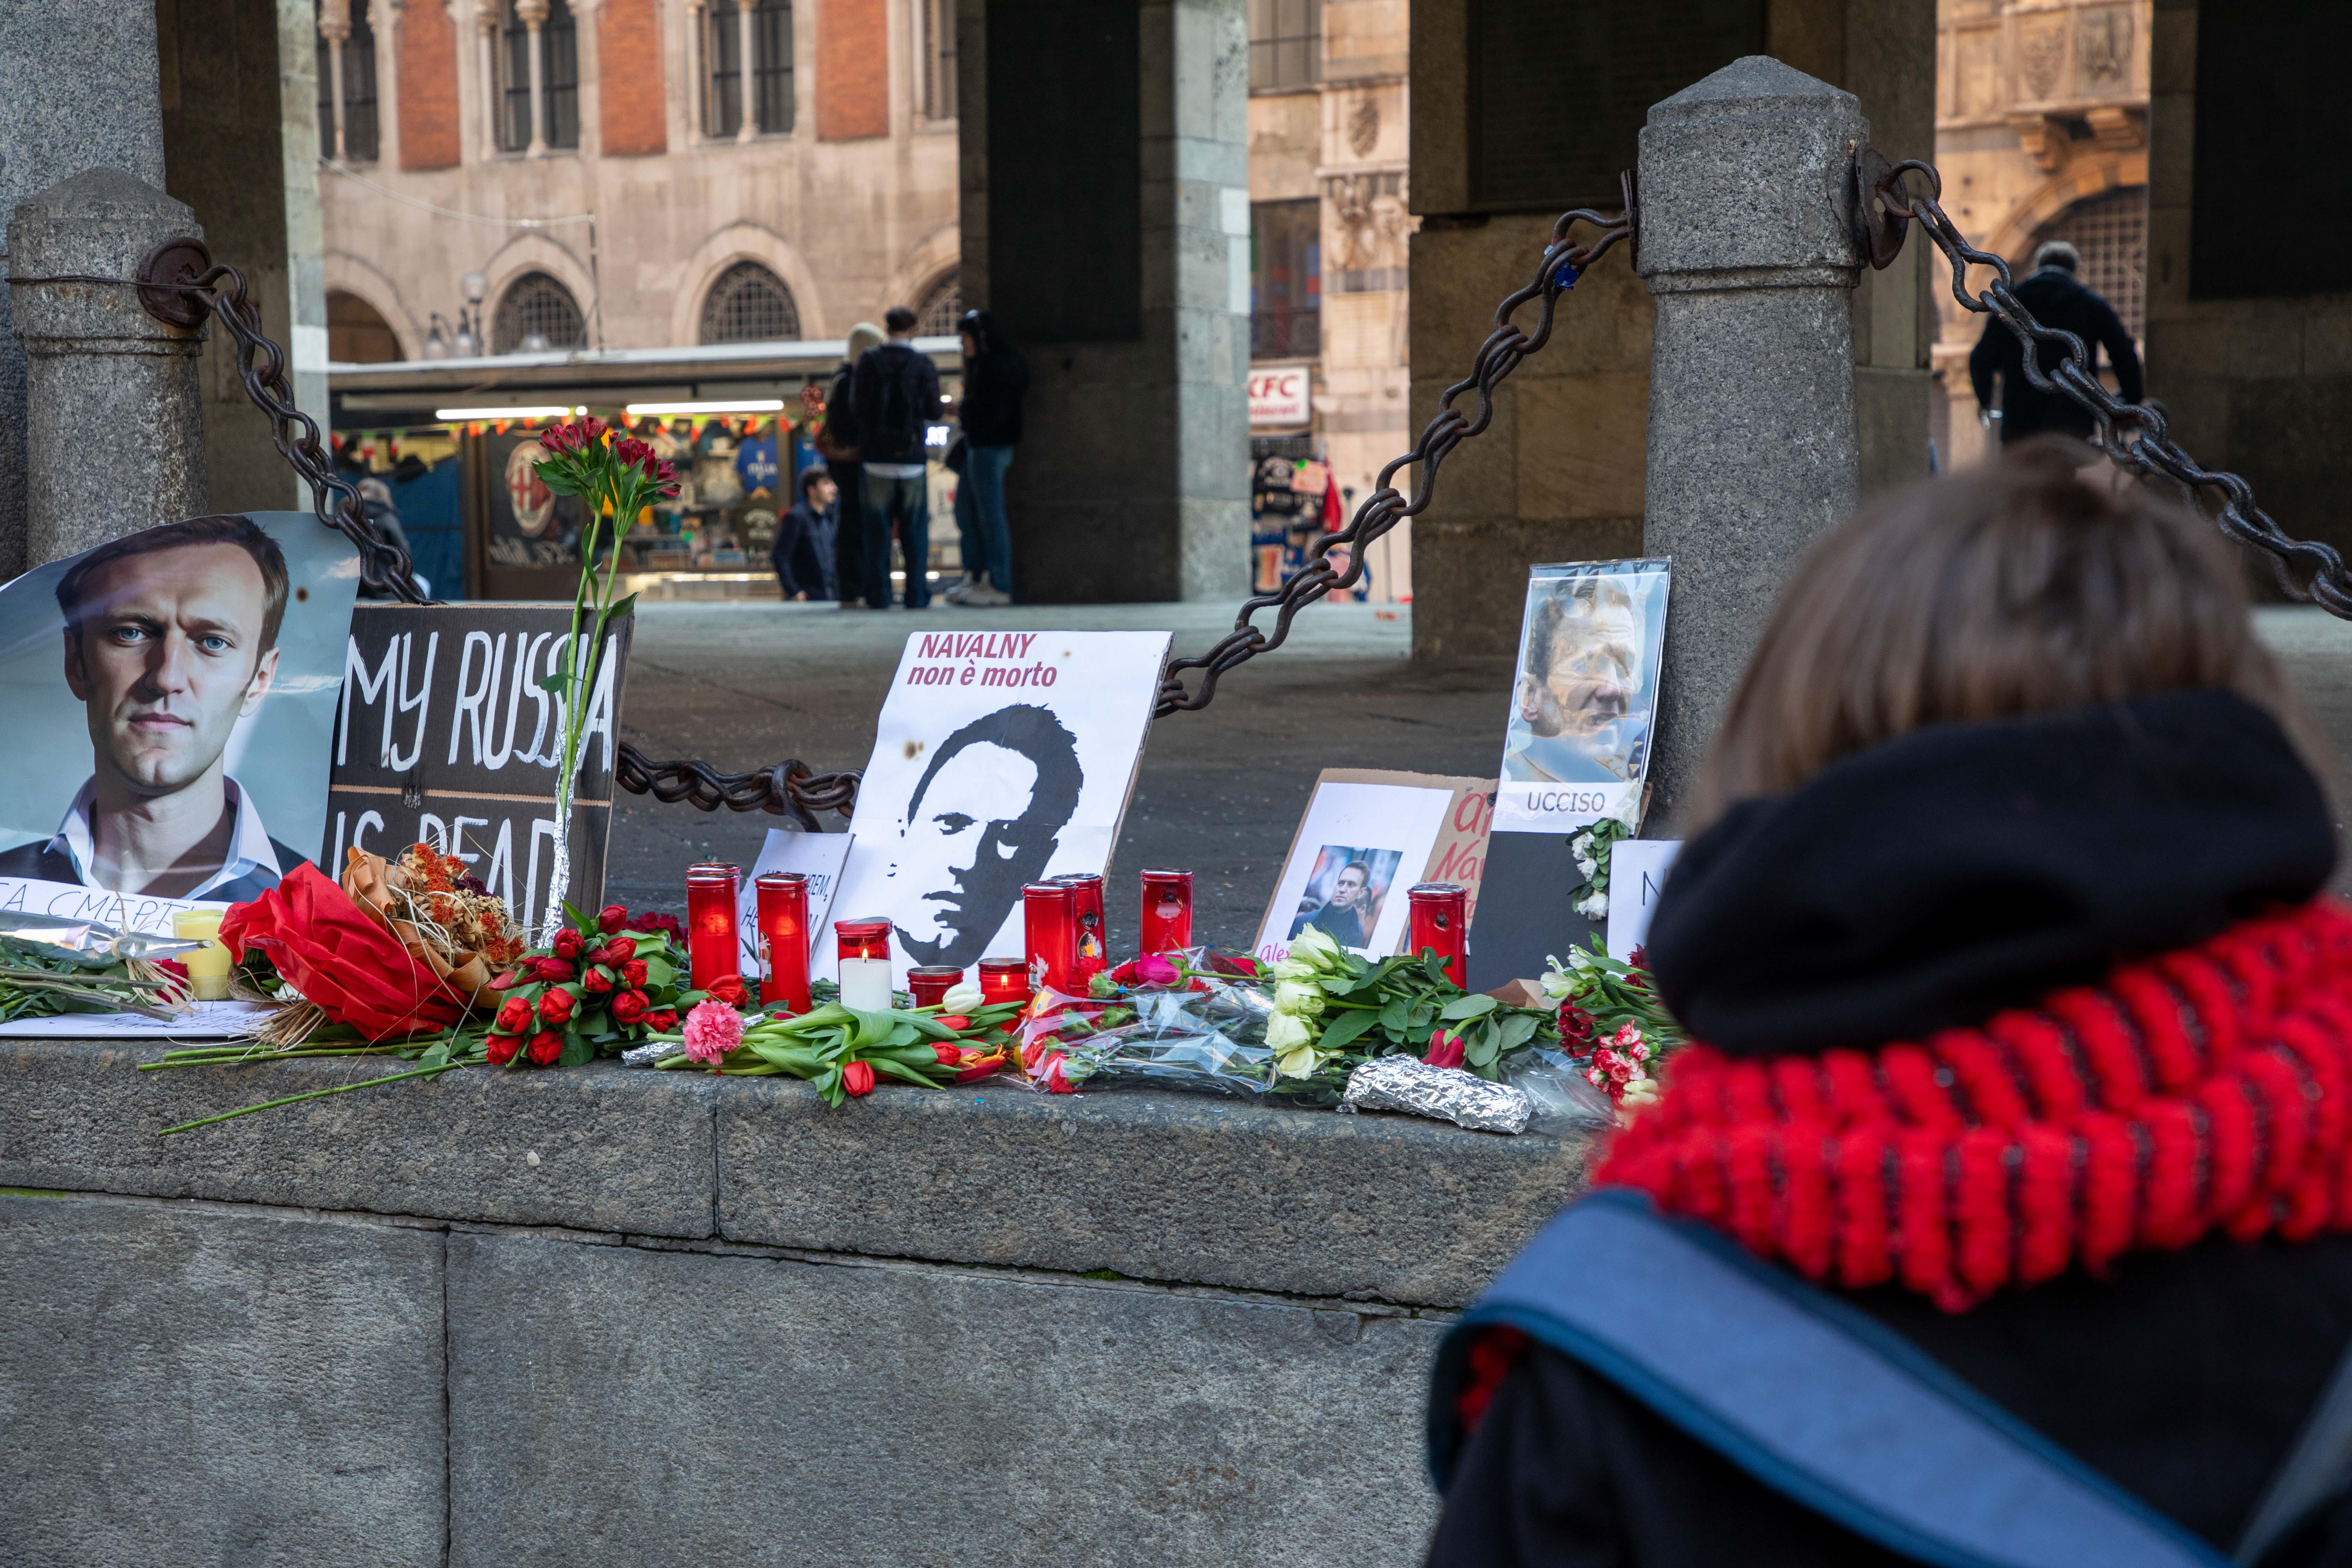 Omaggio Navalny a Milano, Piantedosi: Identificazioni non ledono libertà personale